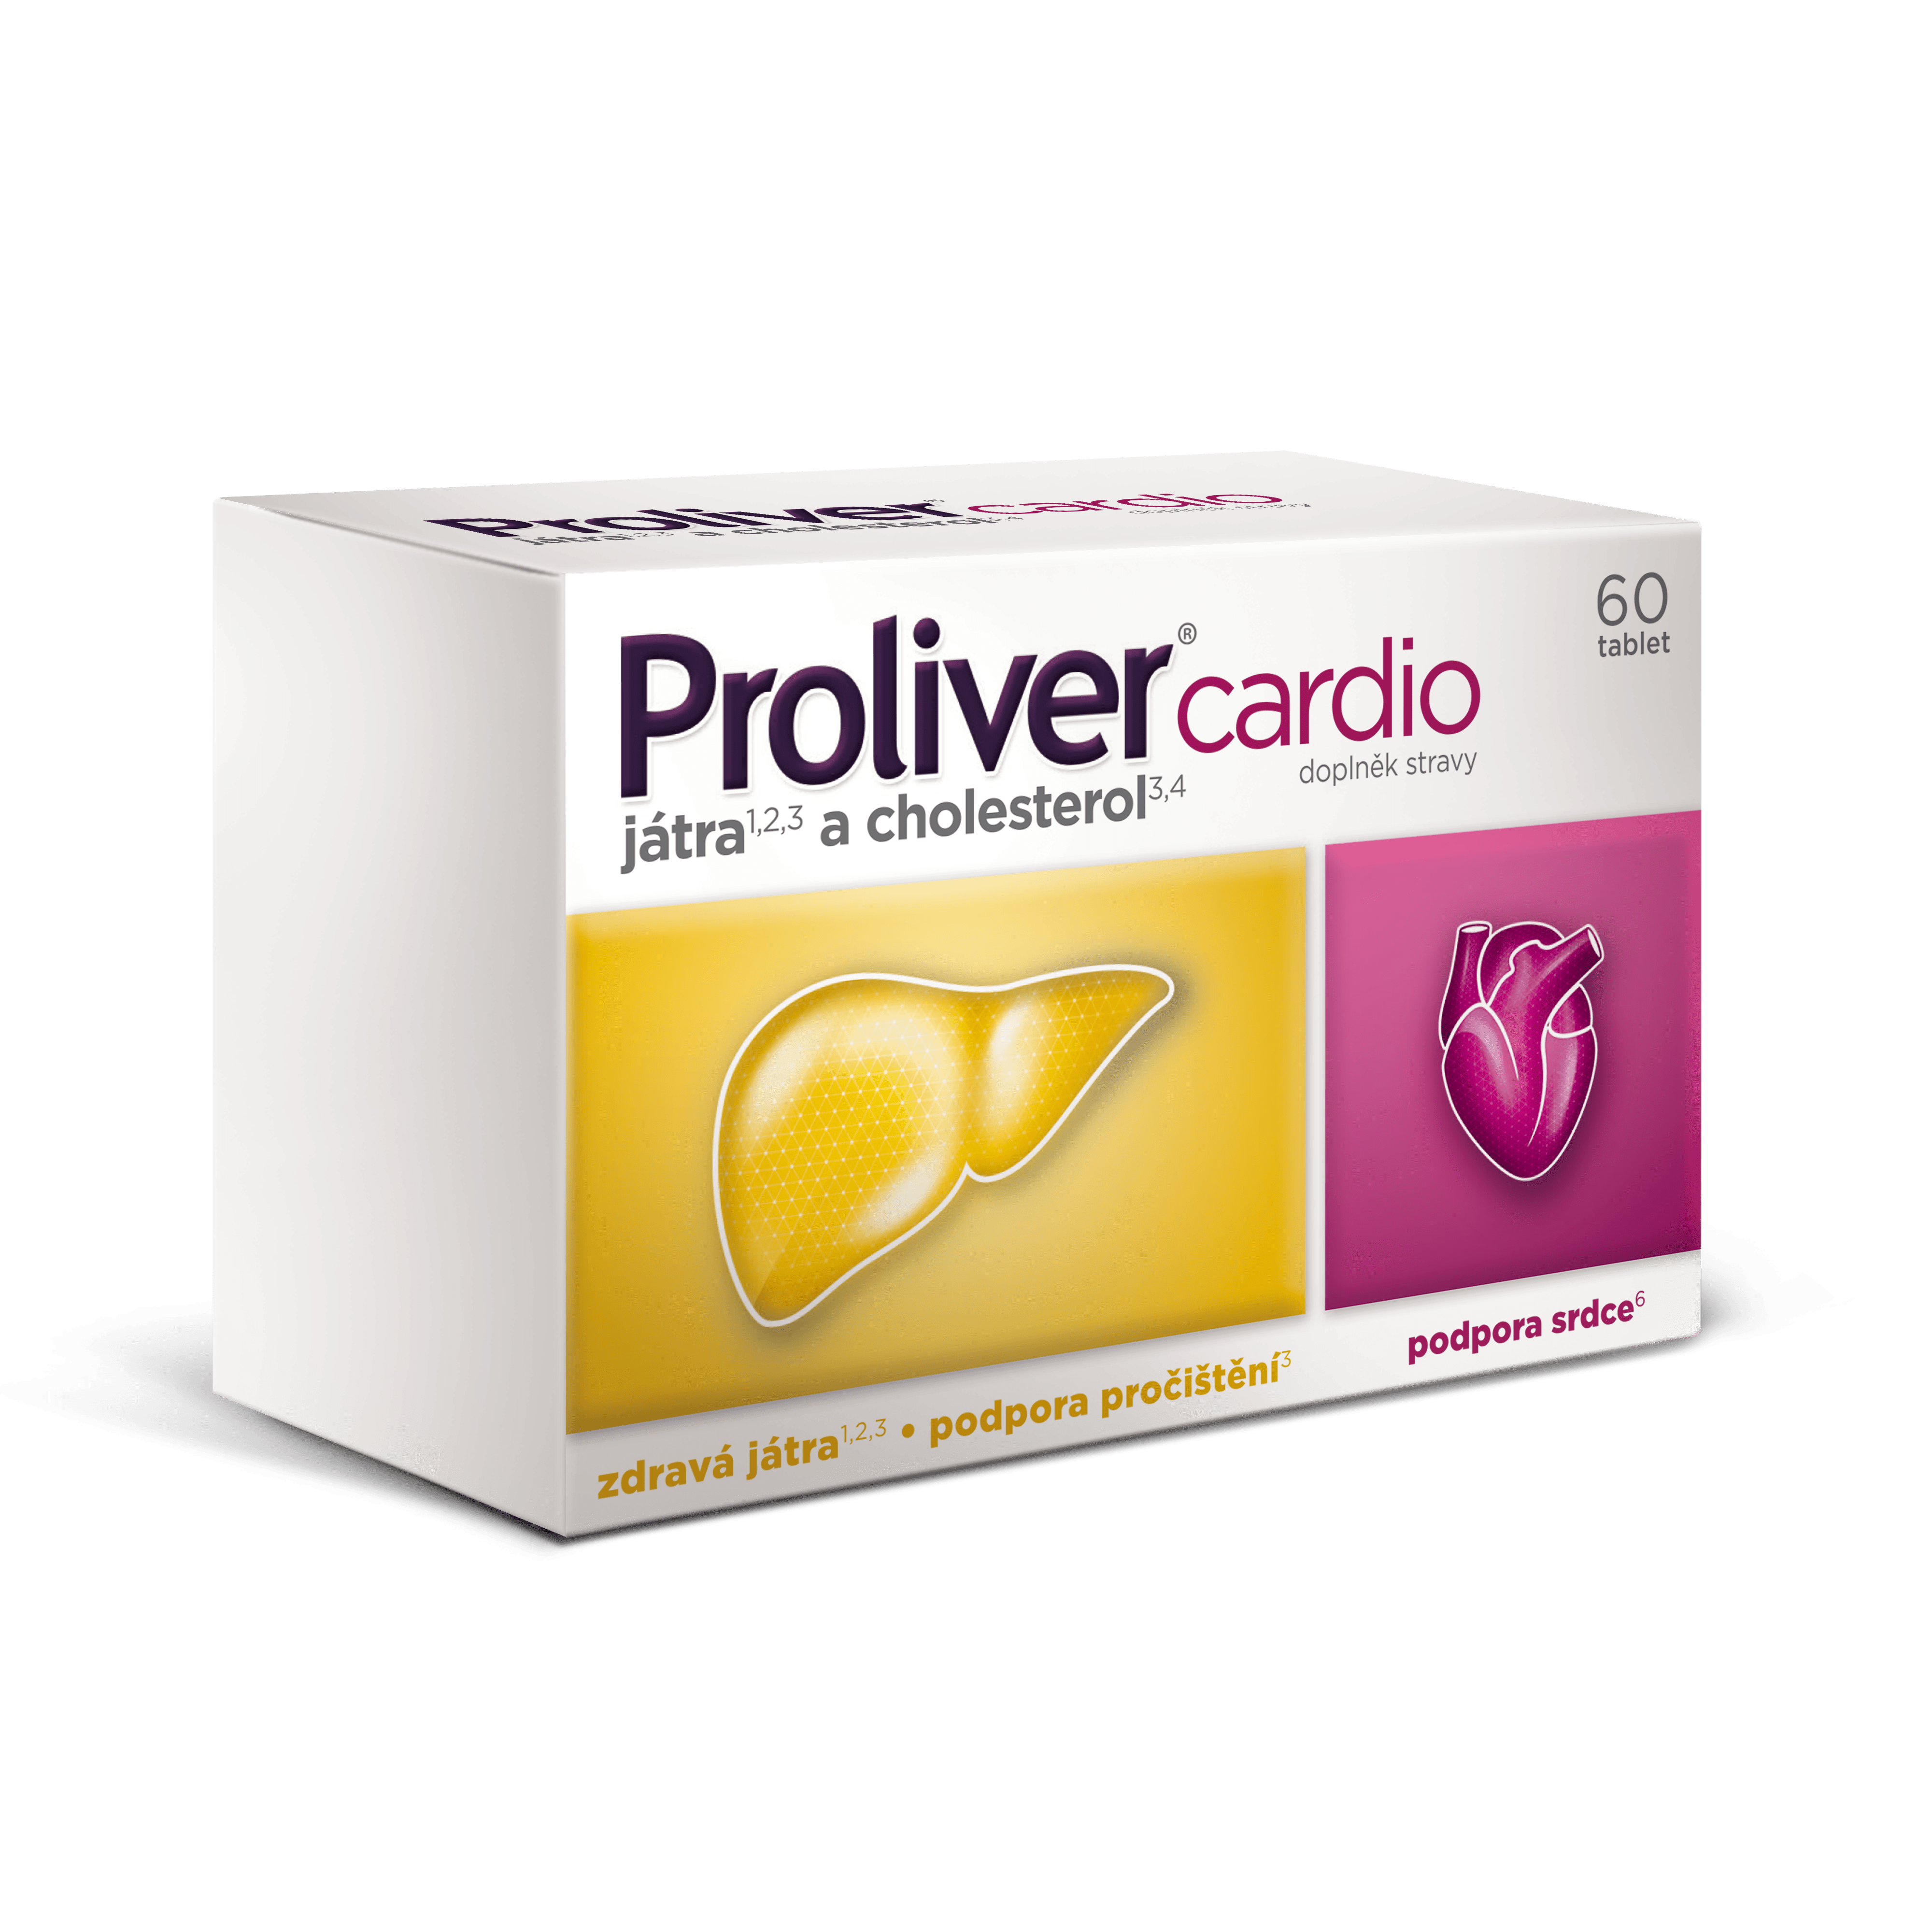 Proliver cardio